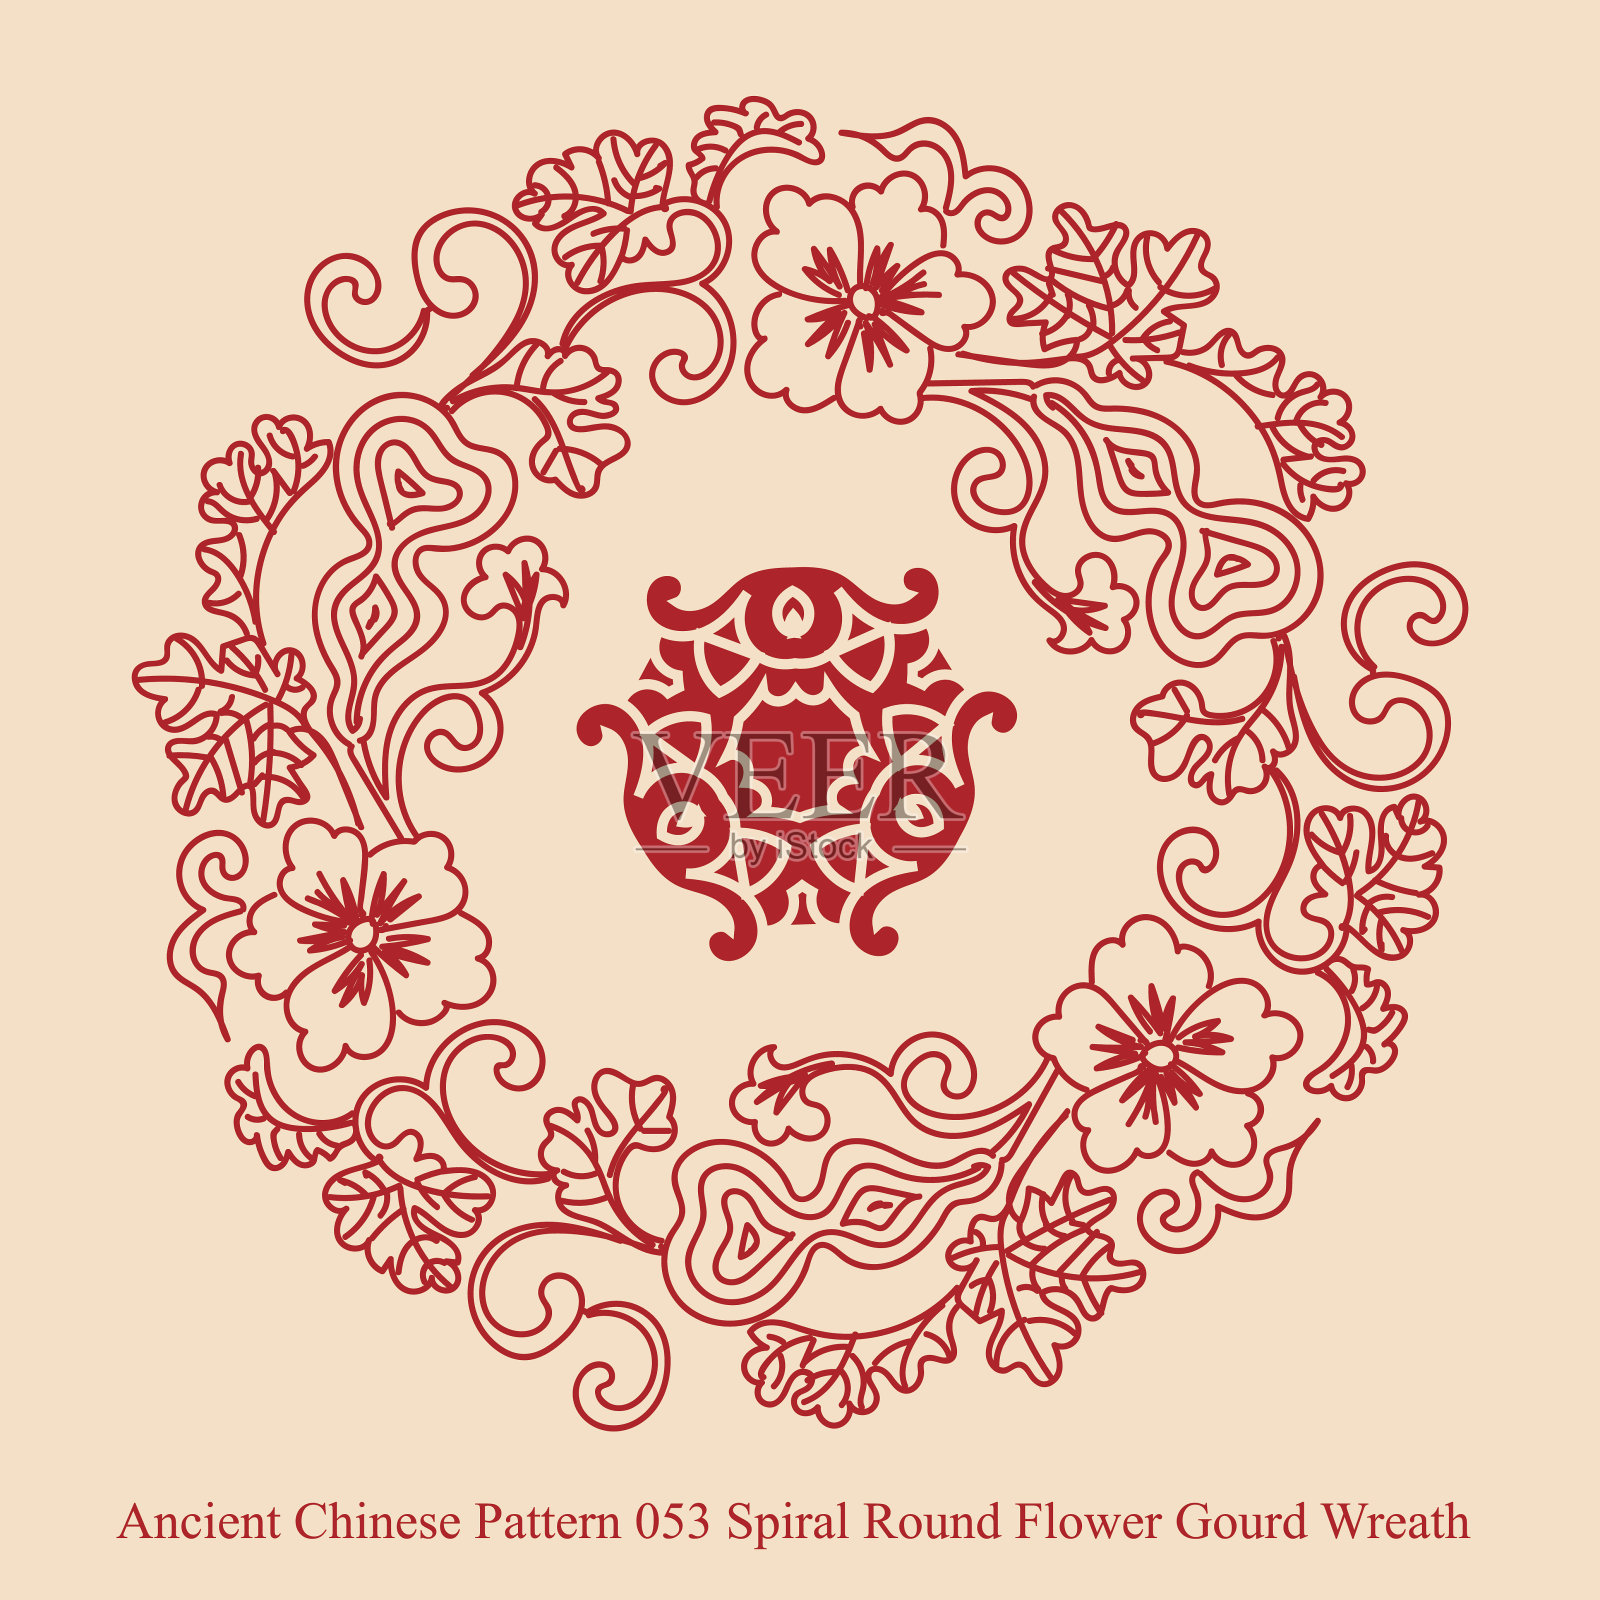 中国古代图案053螺旋圆形花葫芦环插画图片素材